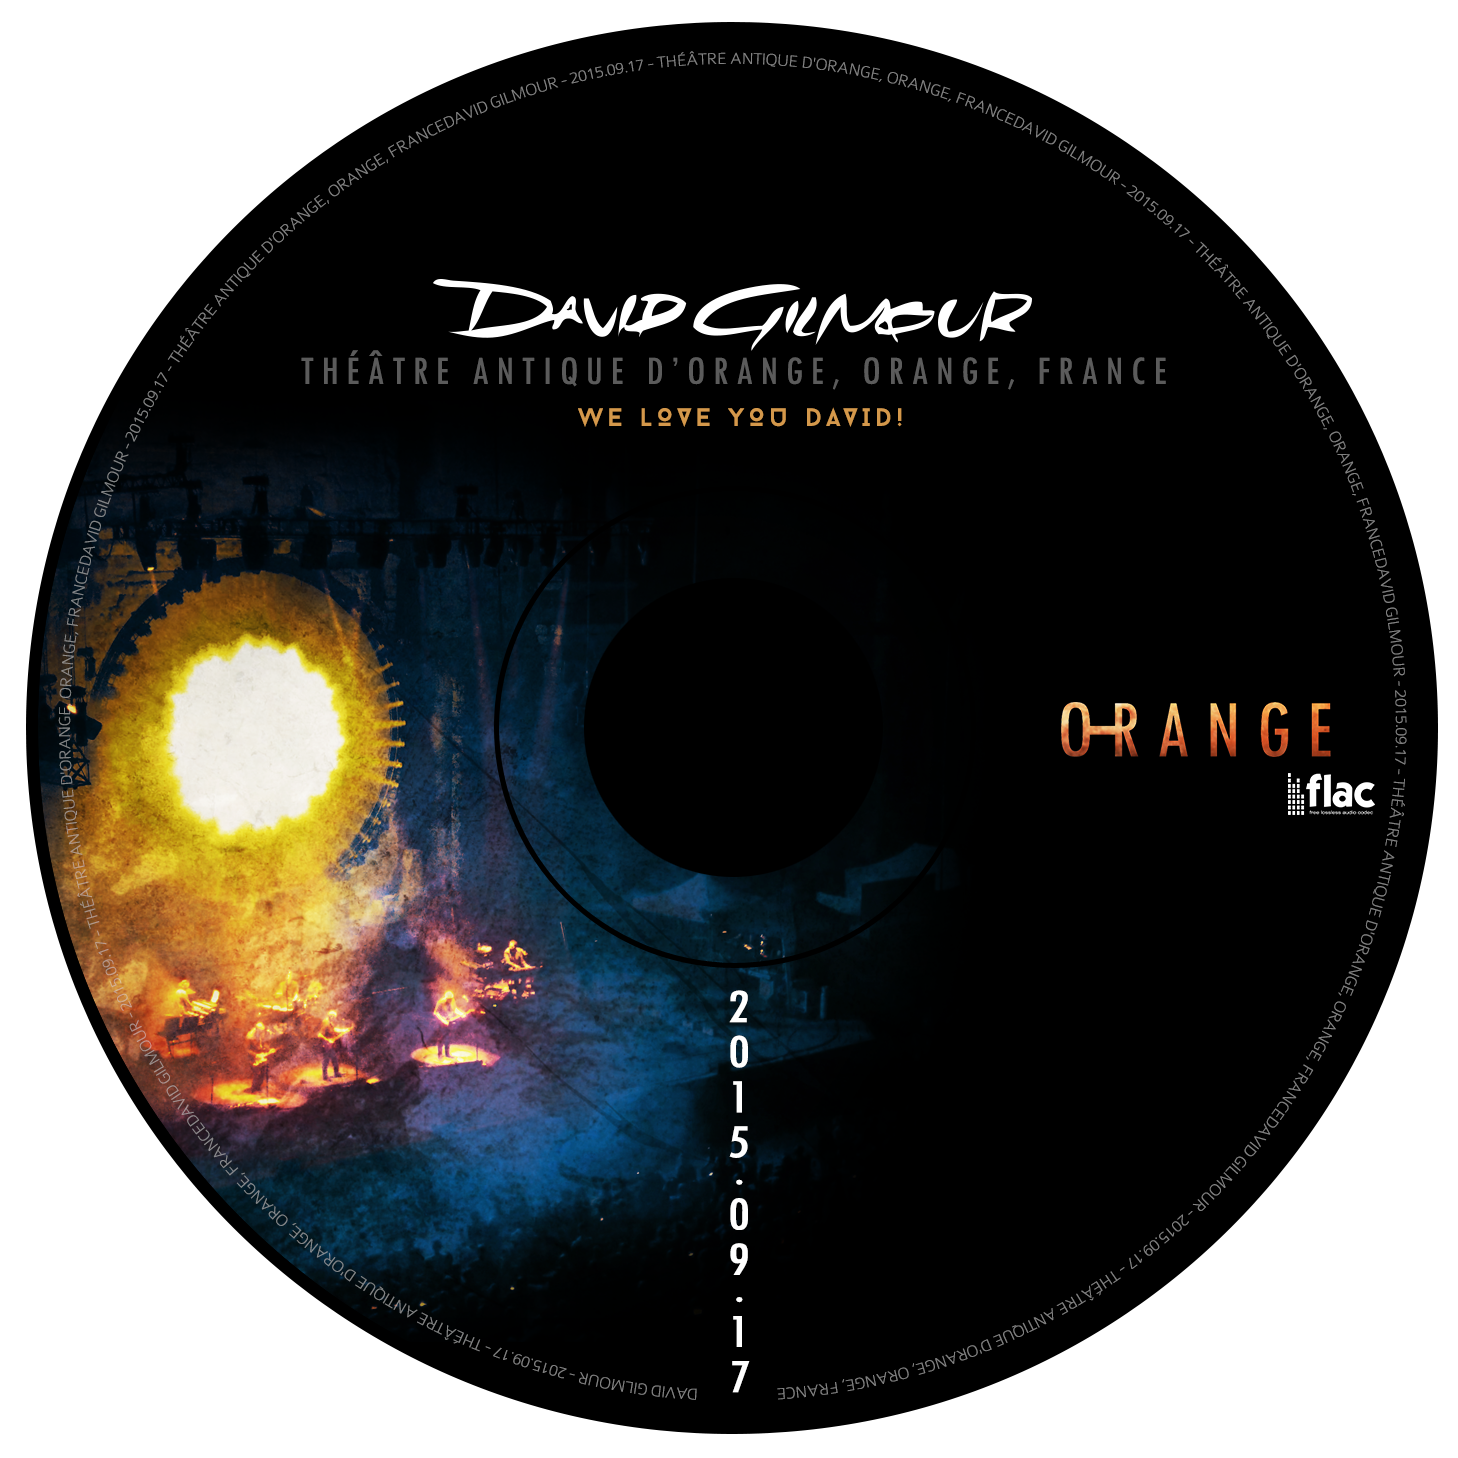 DavidGilmour2015-09-17TheatreAntiqueOrangeFrance (2).png